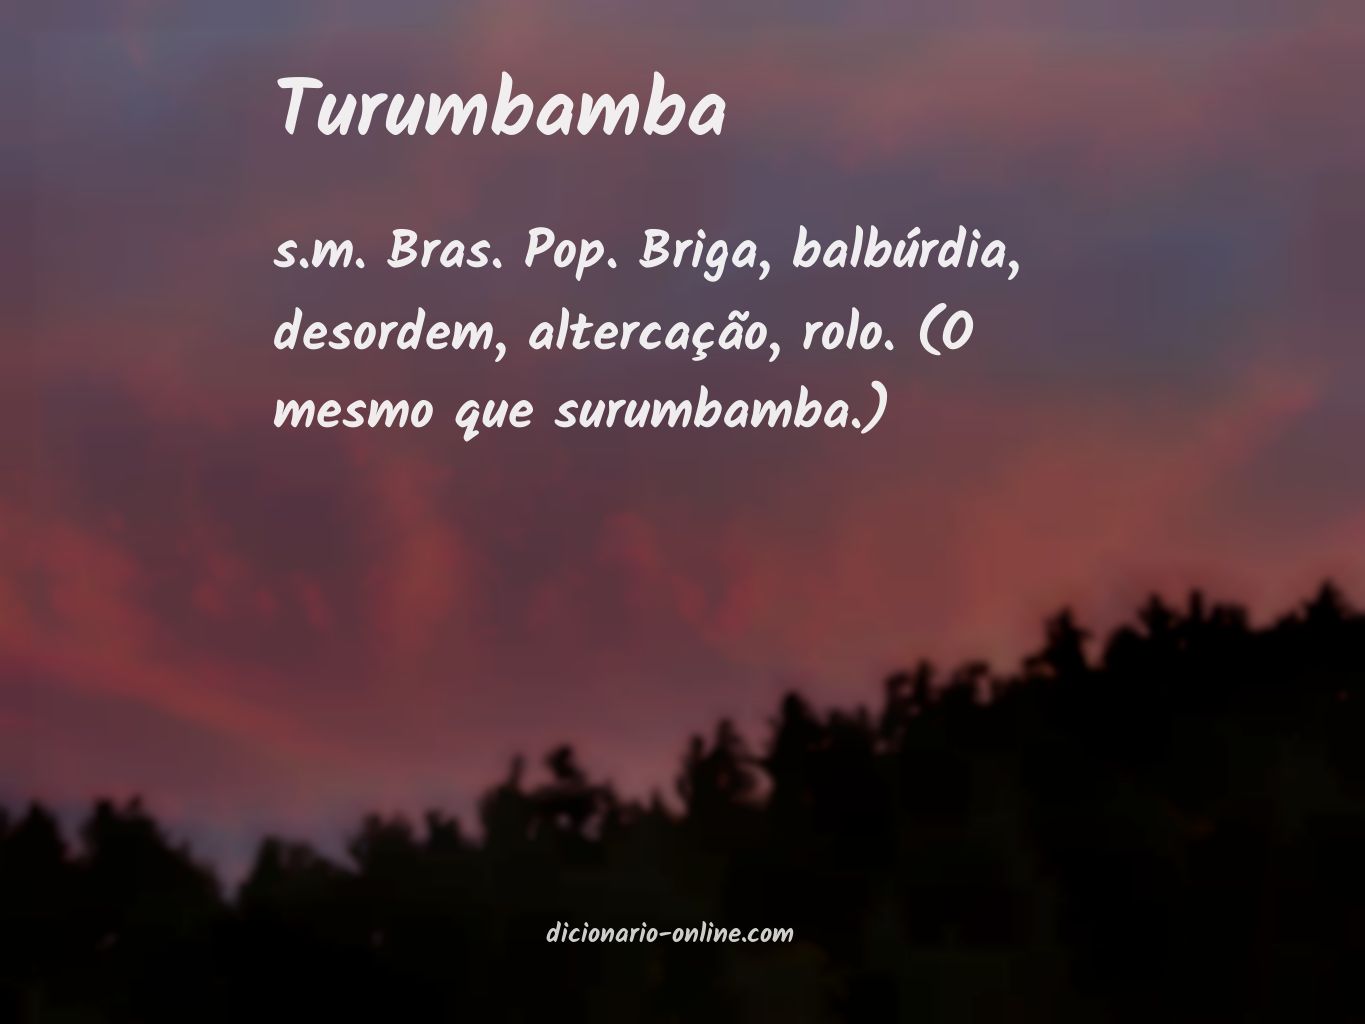 Significado de turumbamba